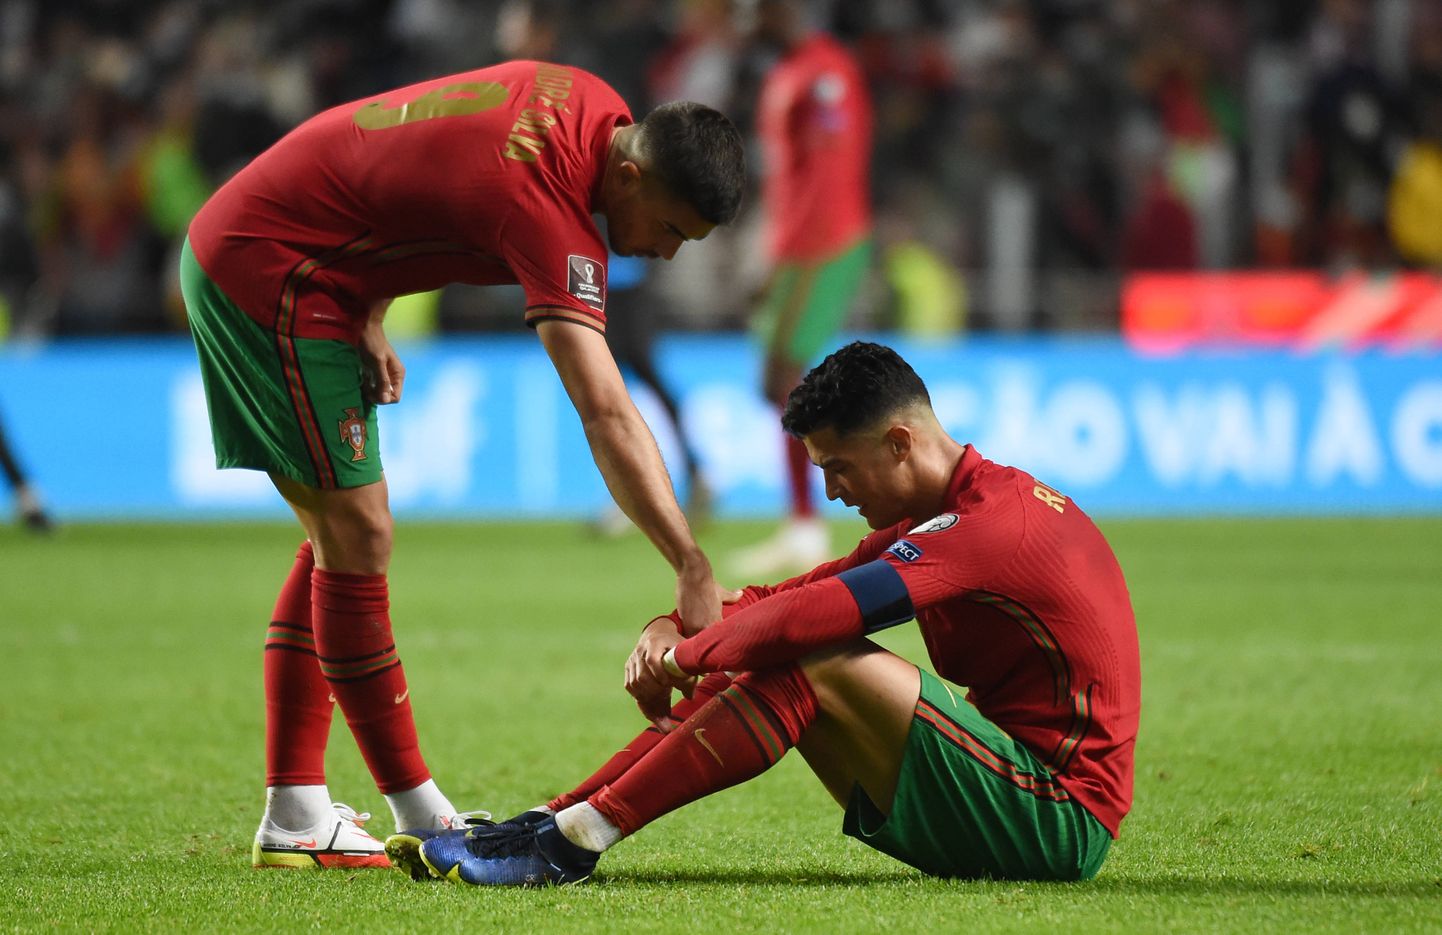 Pettunud Cristiano Ronaldo istub murul pärast Portugali koondise kaotust Serbiale ja MMi otsepiletita jäämist.